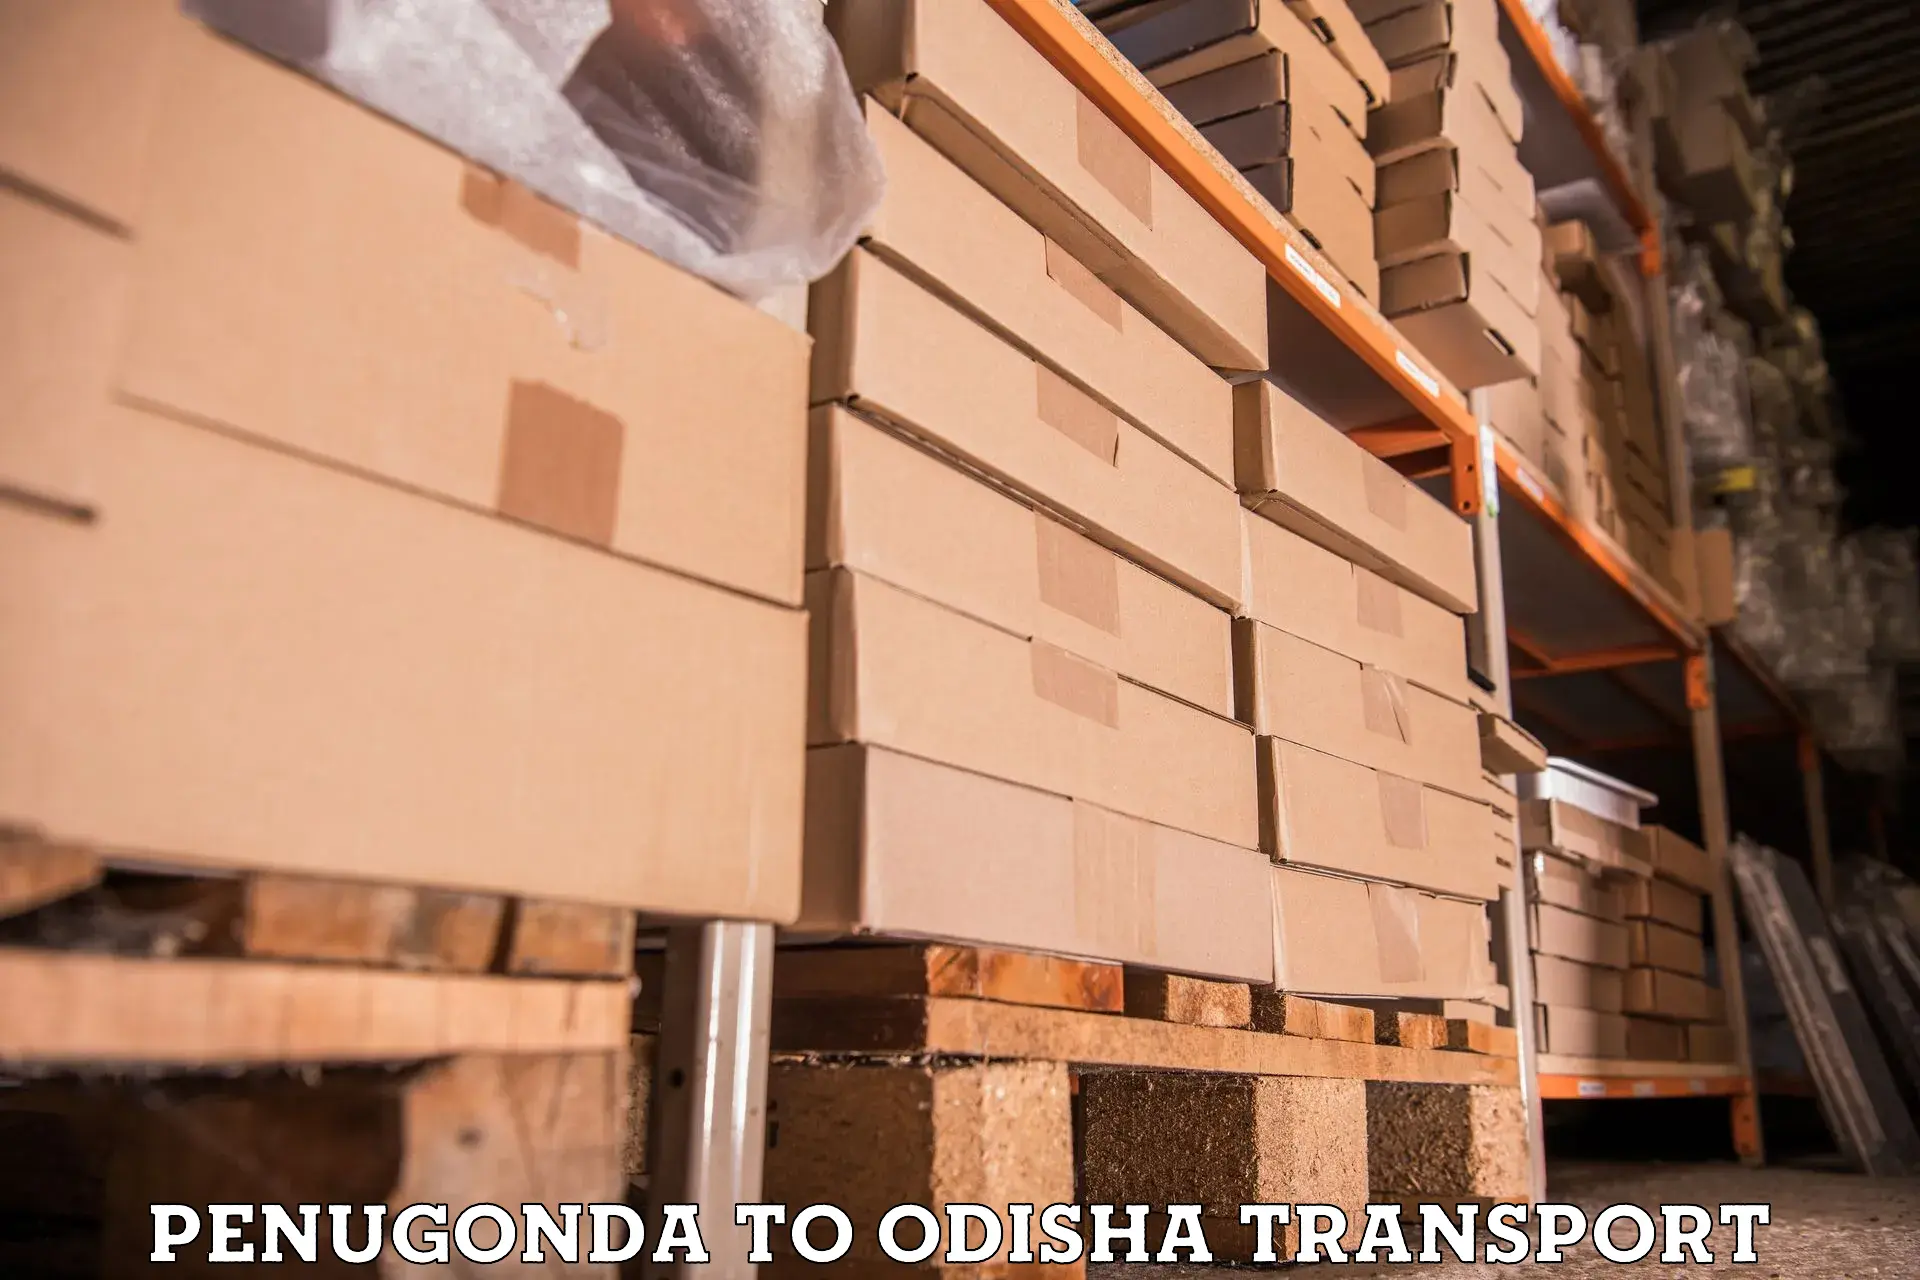 Container transport service Penugonda to Adaspur